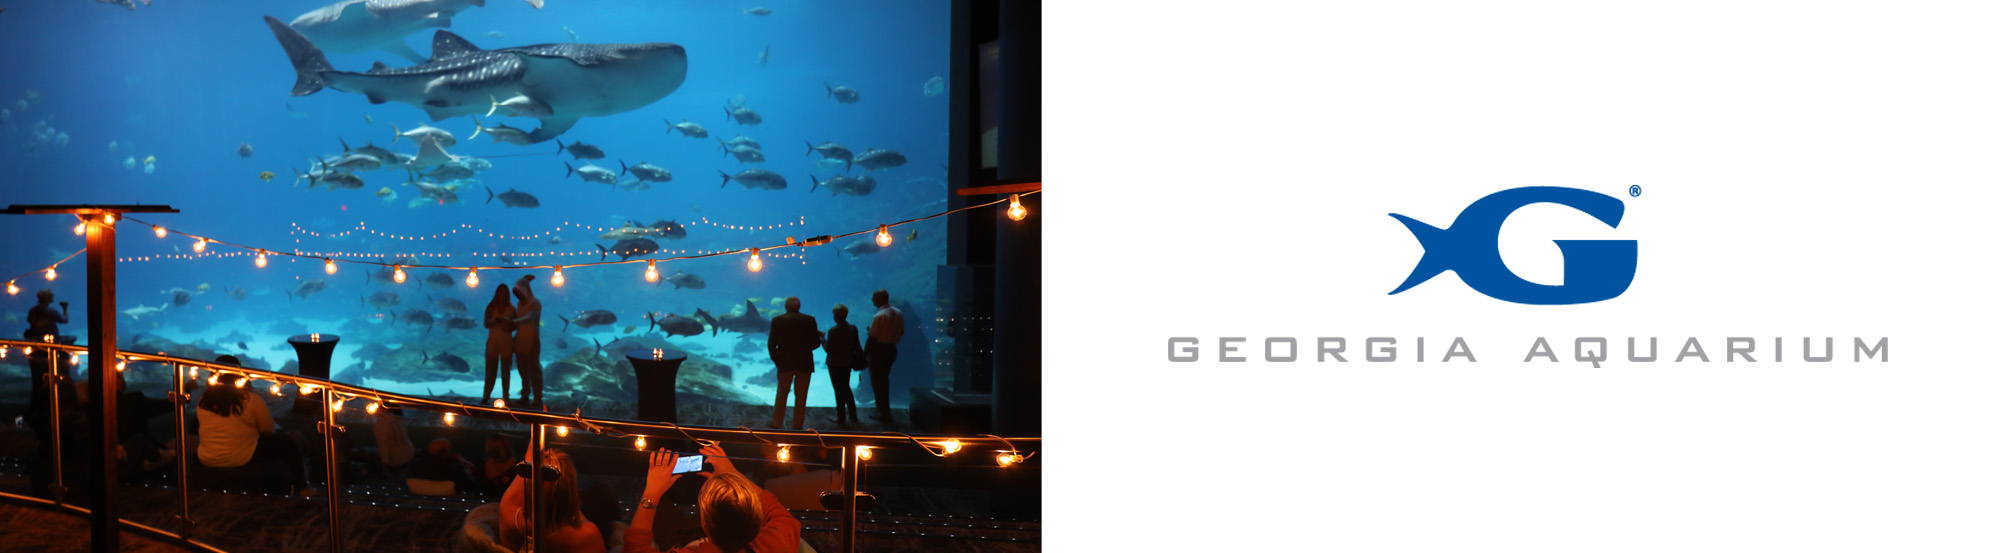 Georgia Aquarium Photos